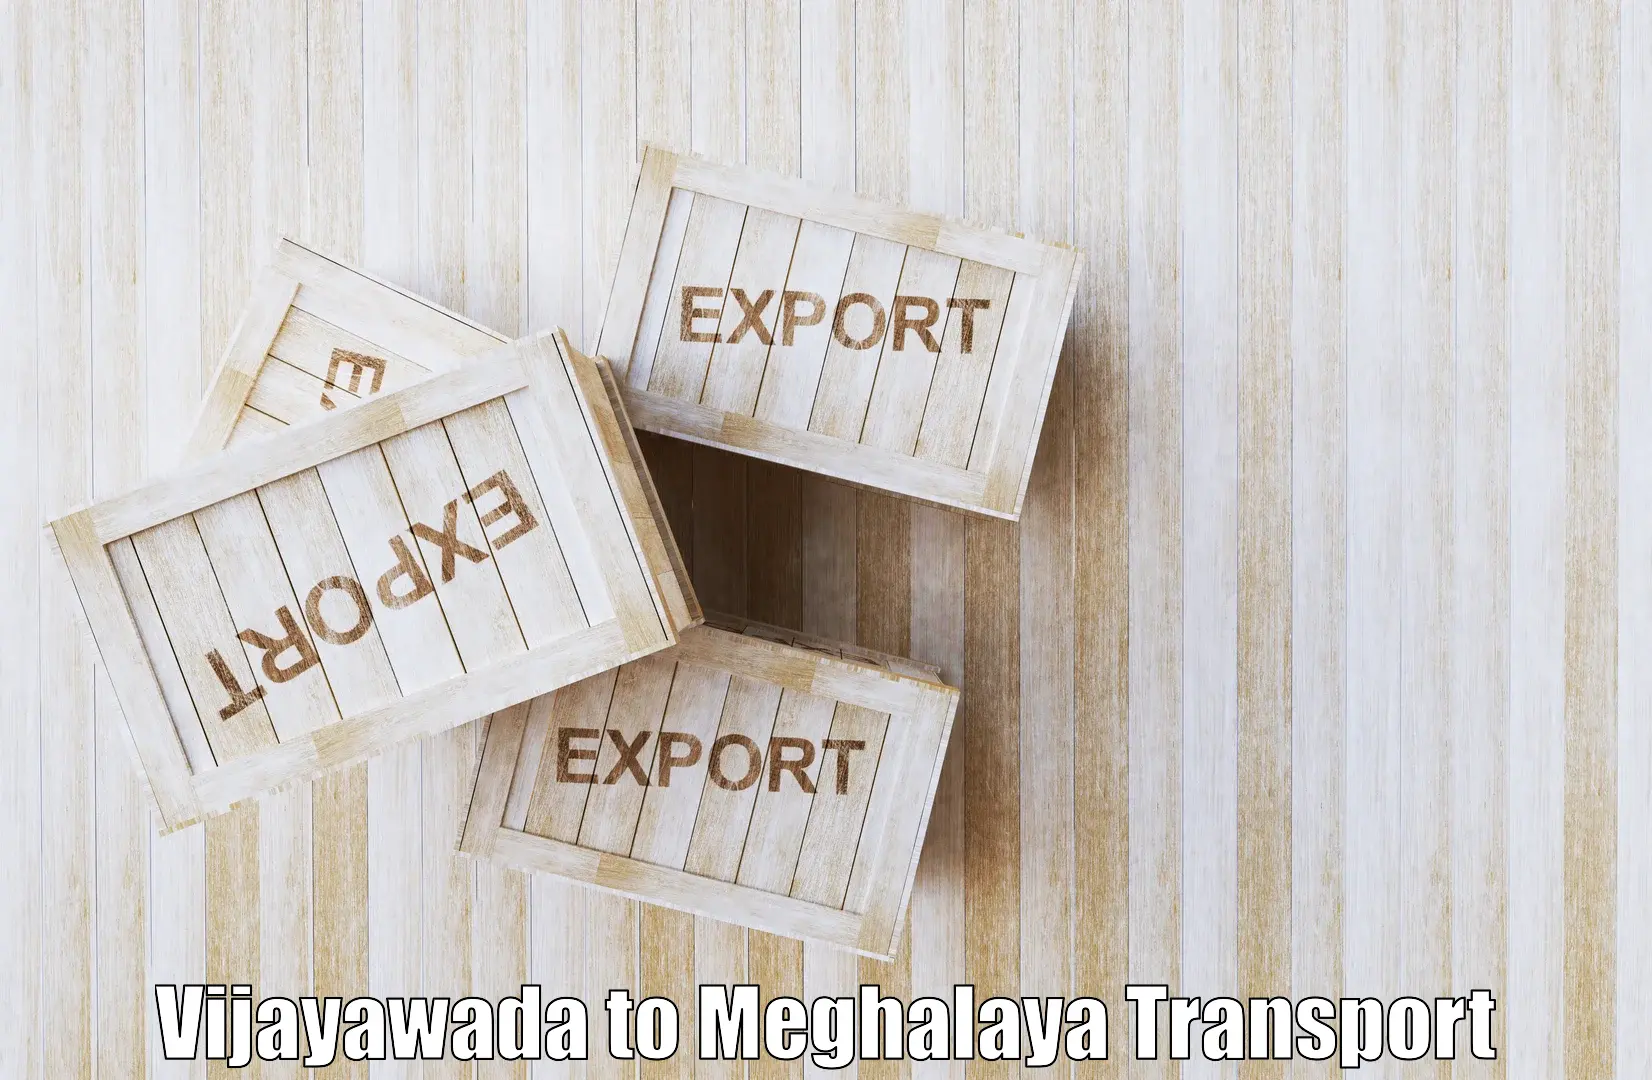 Goods transport services Vijayawada to Meghalaya